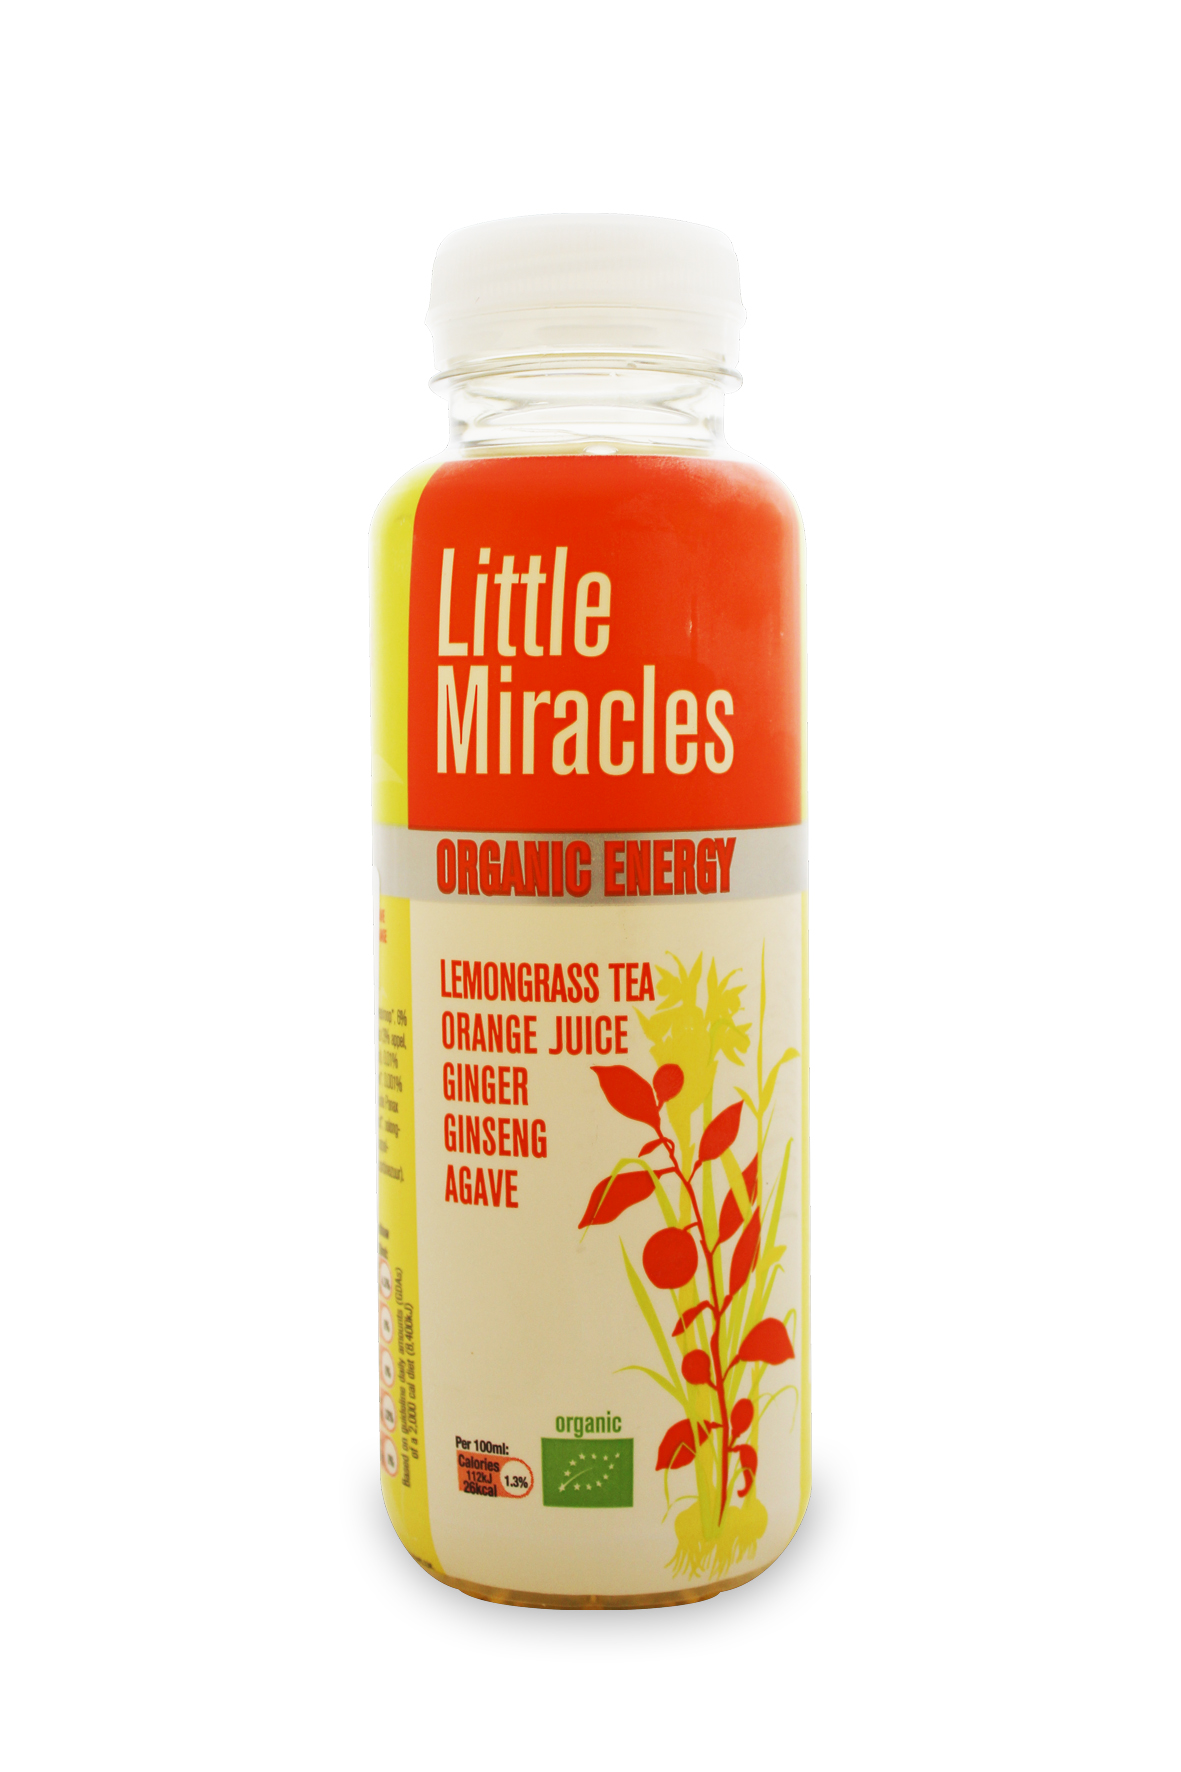 Poco bebida energética Milagros BIO con sabor a hierba de limón, jugo de naranja, jengibre, ginseng